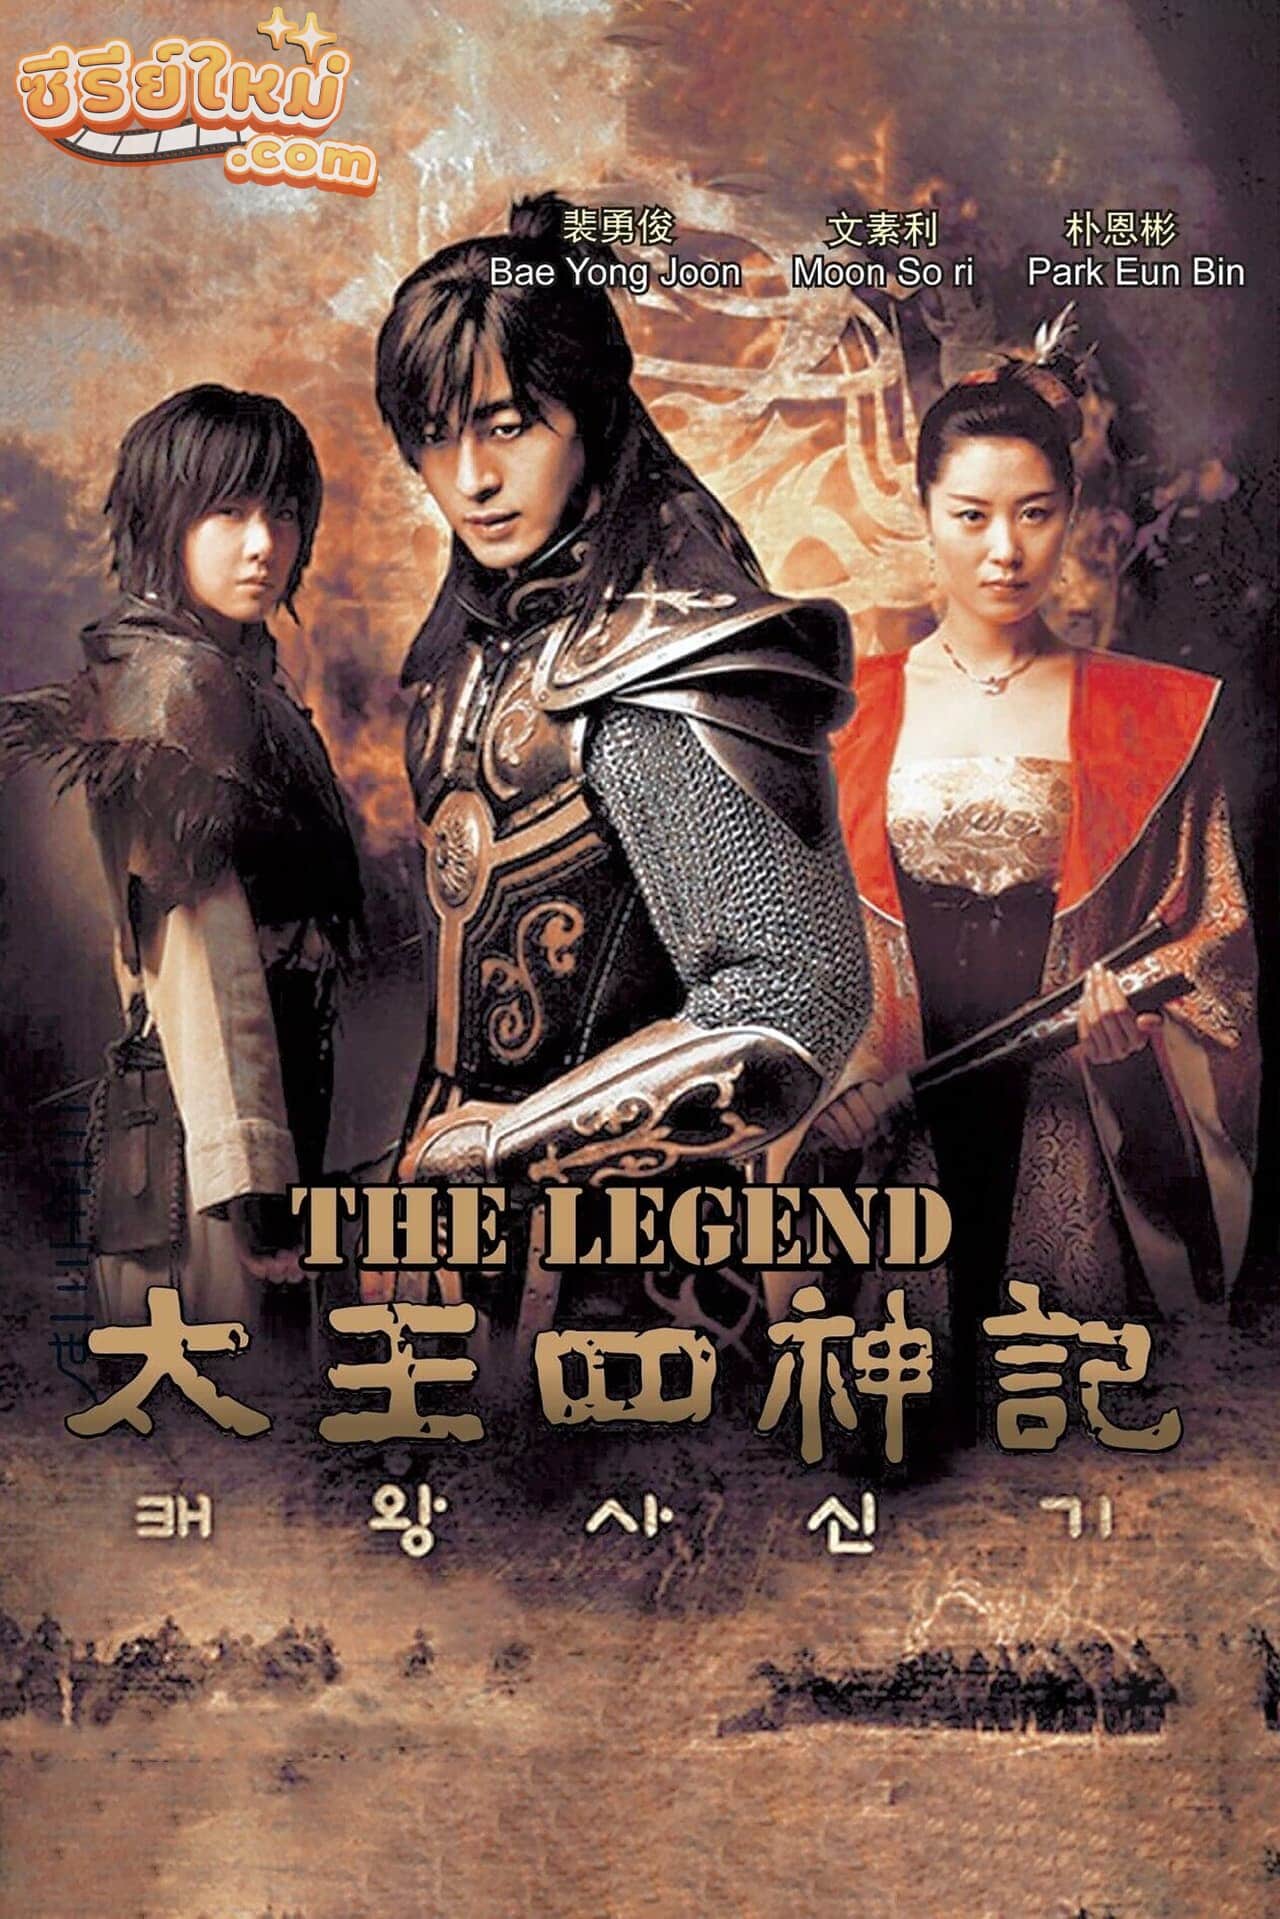 The Legend ตำนานจอมกษัตริย์เทพสวรรค์ (2007)